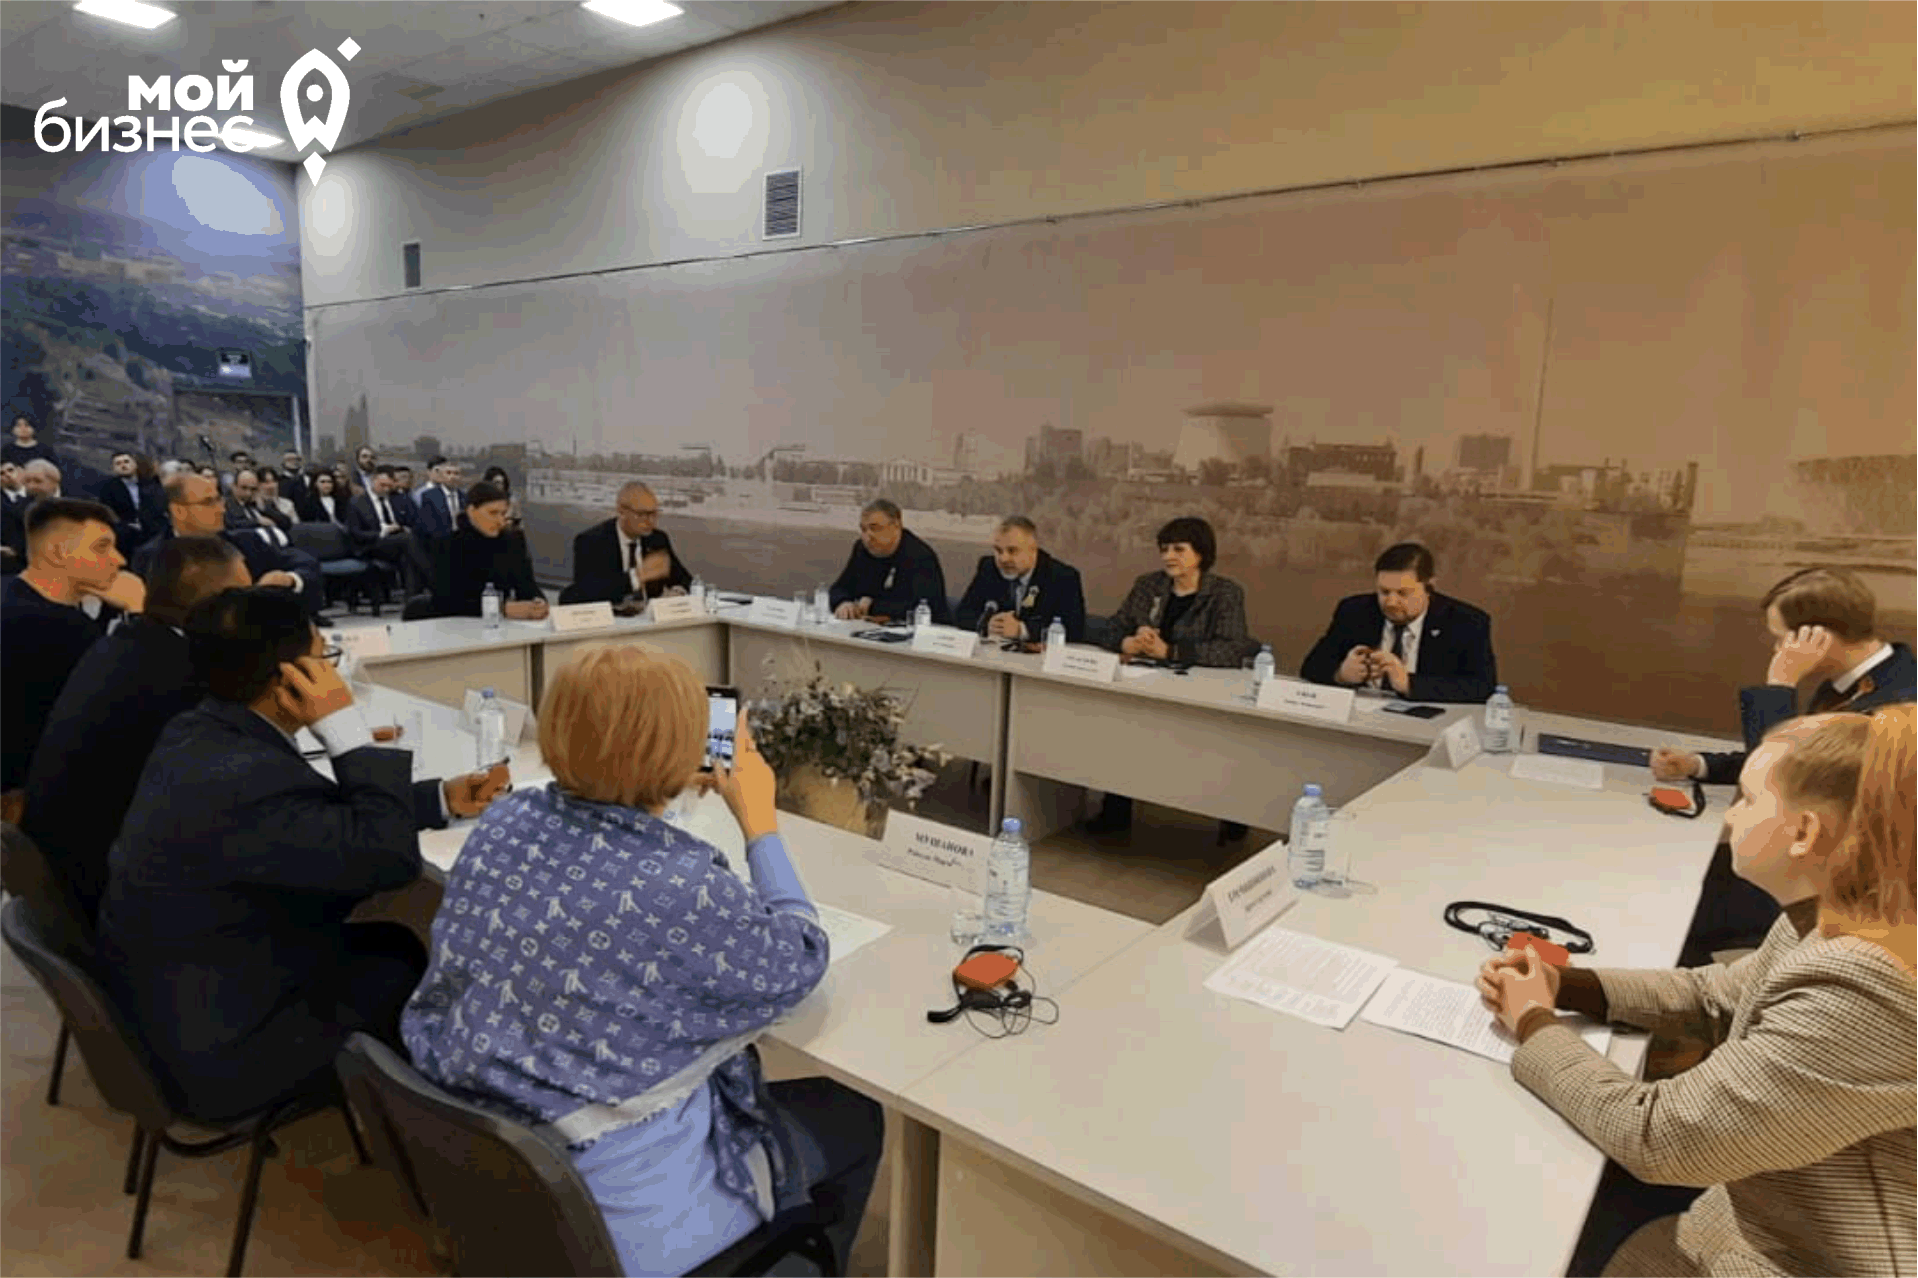 Ученые и общественники из разных стран в Волгограде обсудили аспекты сохранения исторической памяти